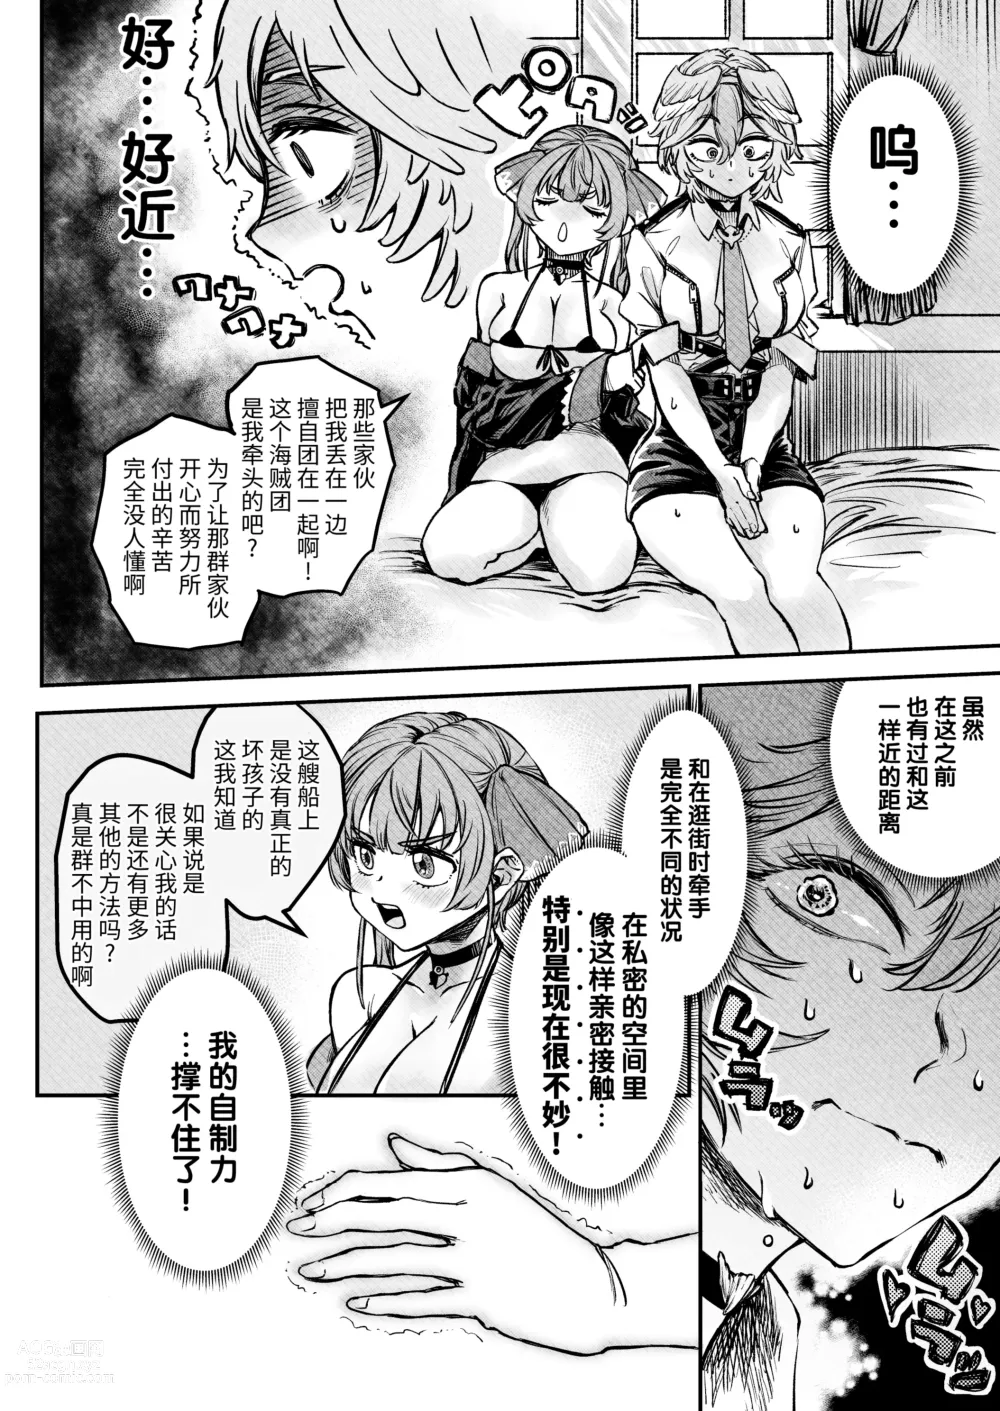 Page 7 of doujinshi Watashi ga Takarabako o Akete ii no ka ne?